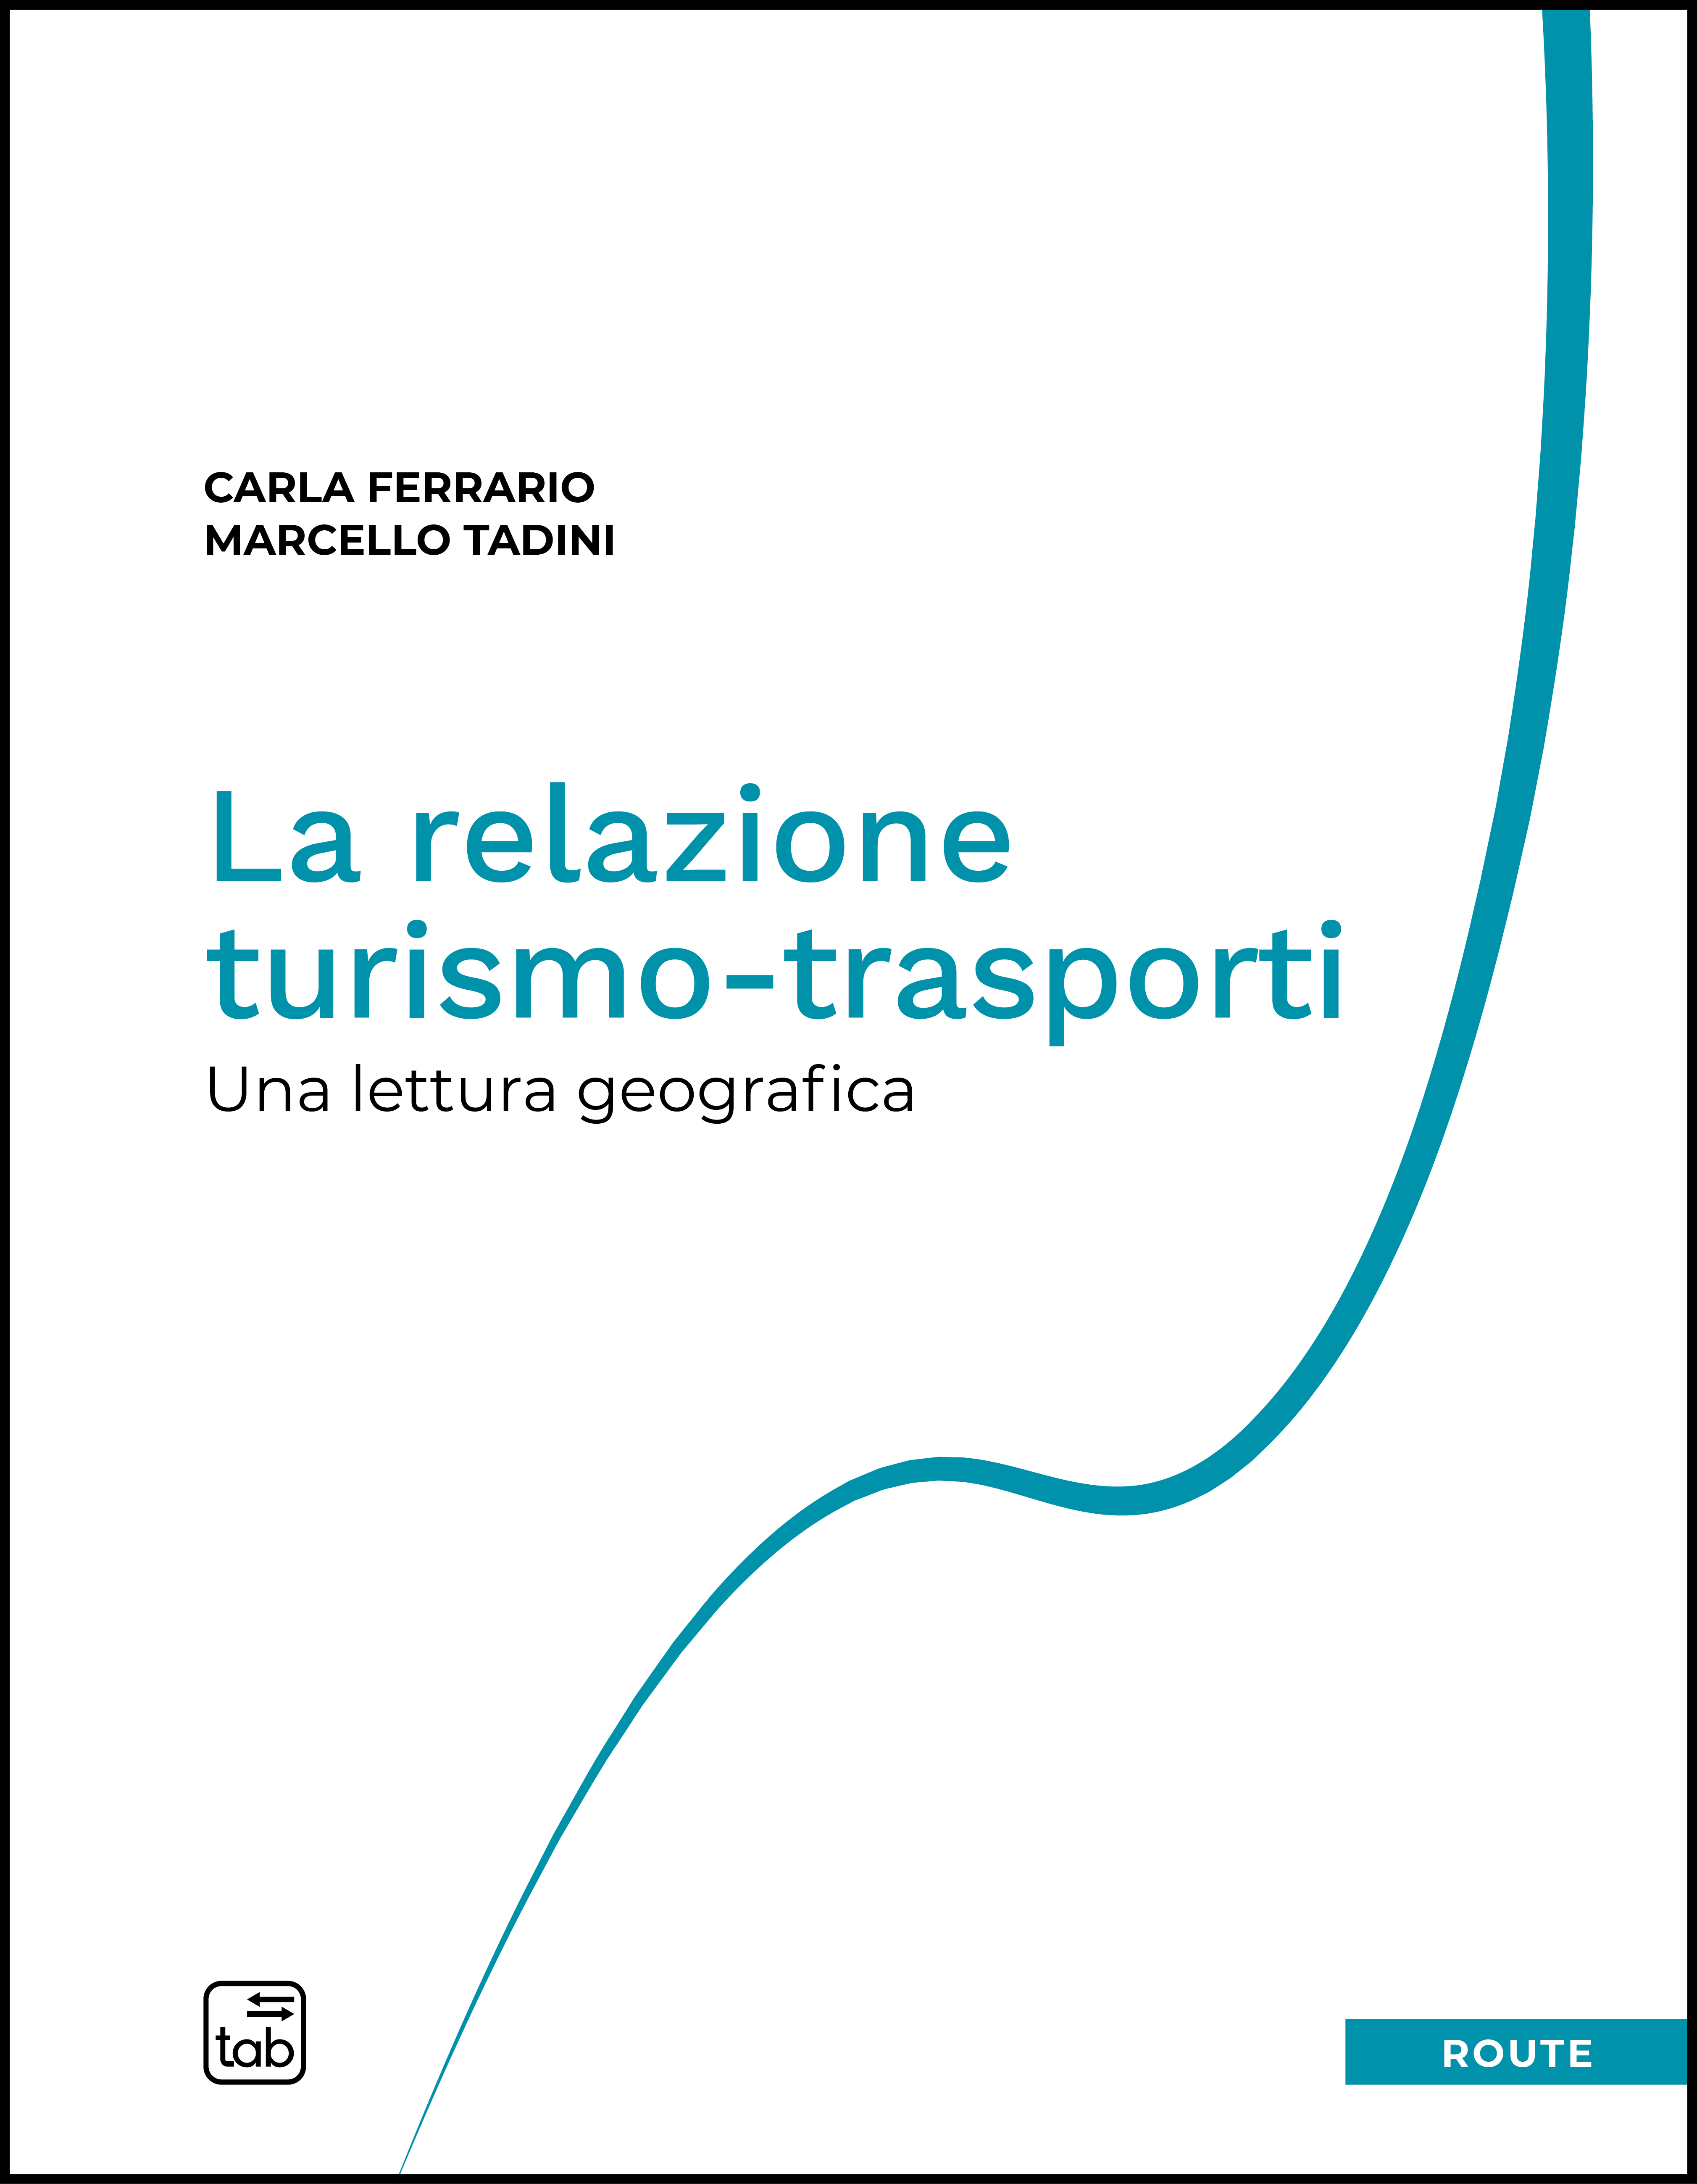 La relazione turismo-trasporti